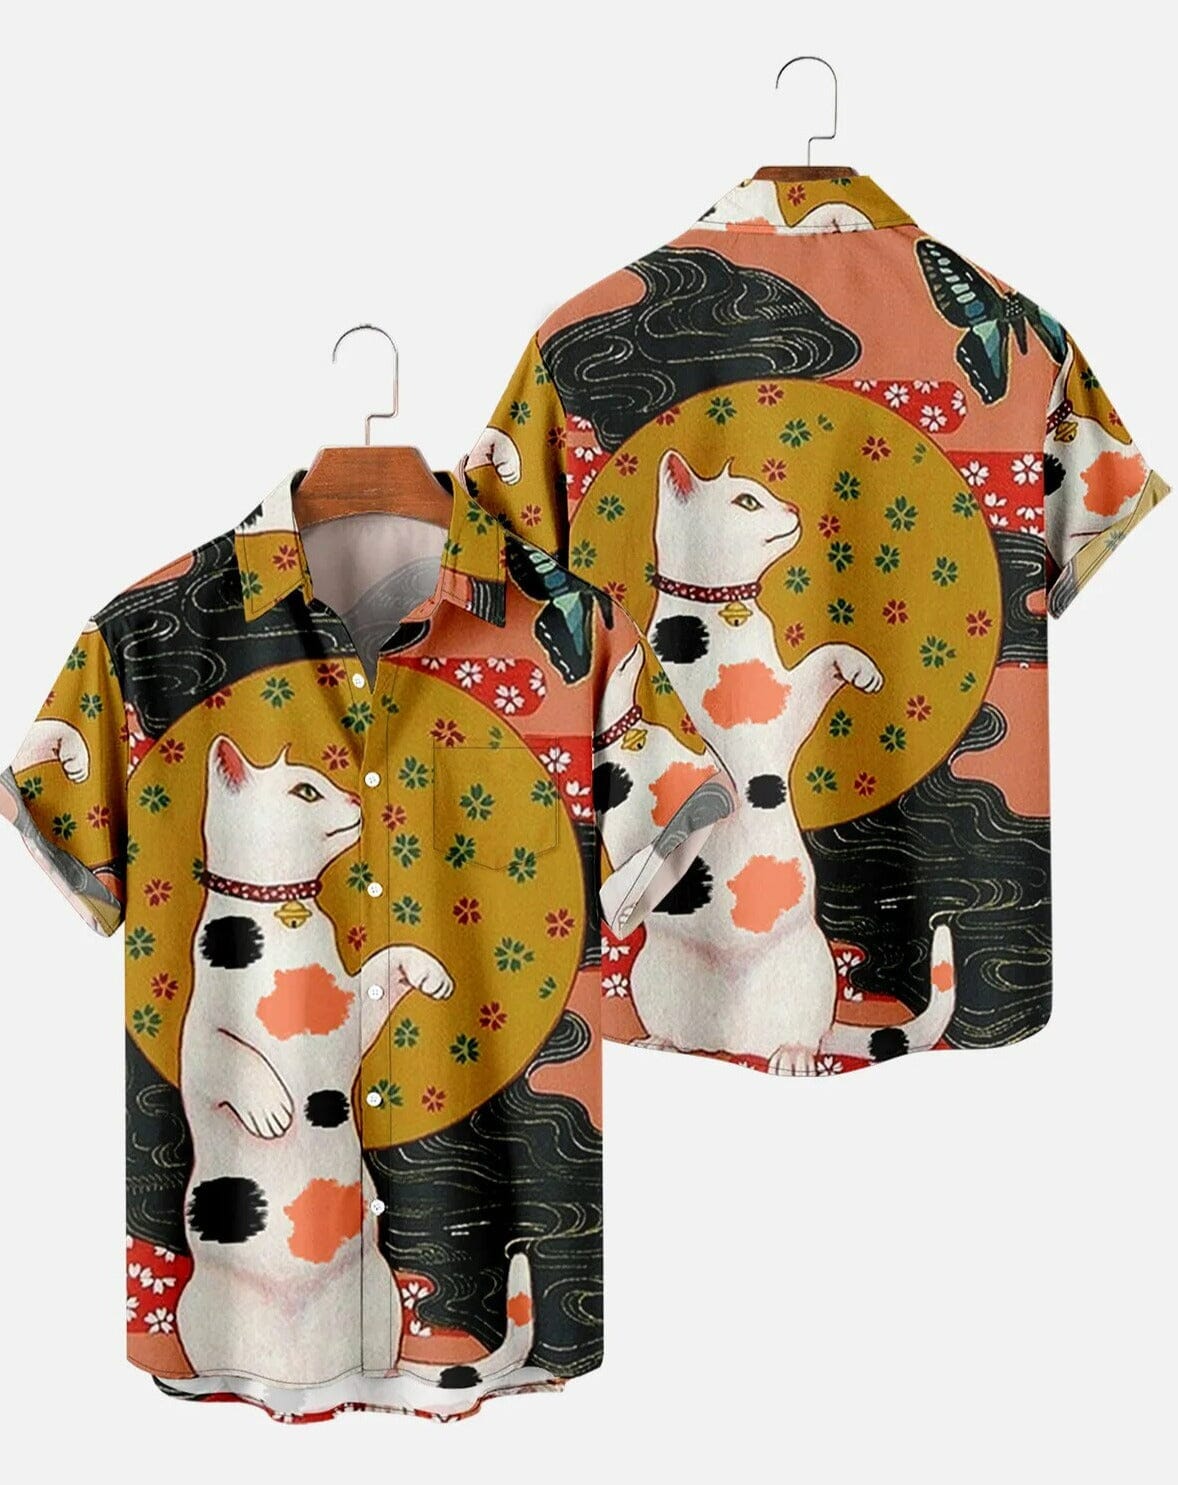 Camisa Casual com Estampas Japonesas Camisa GatoGeek Marrom e Preto (Gato) PP (S) 